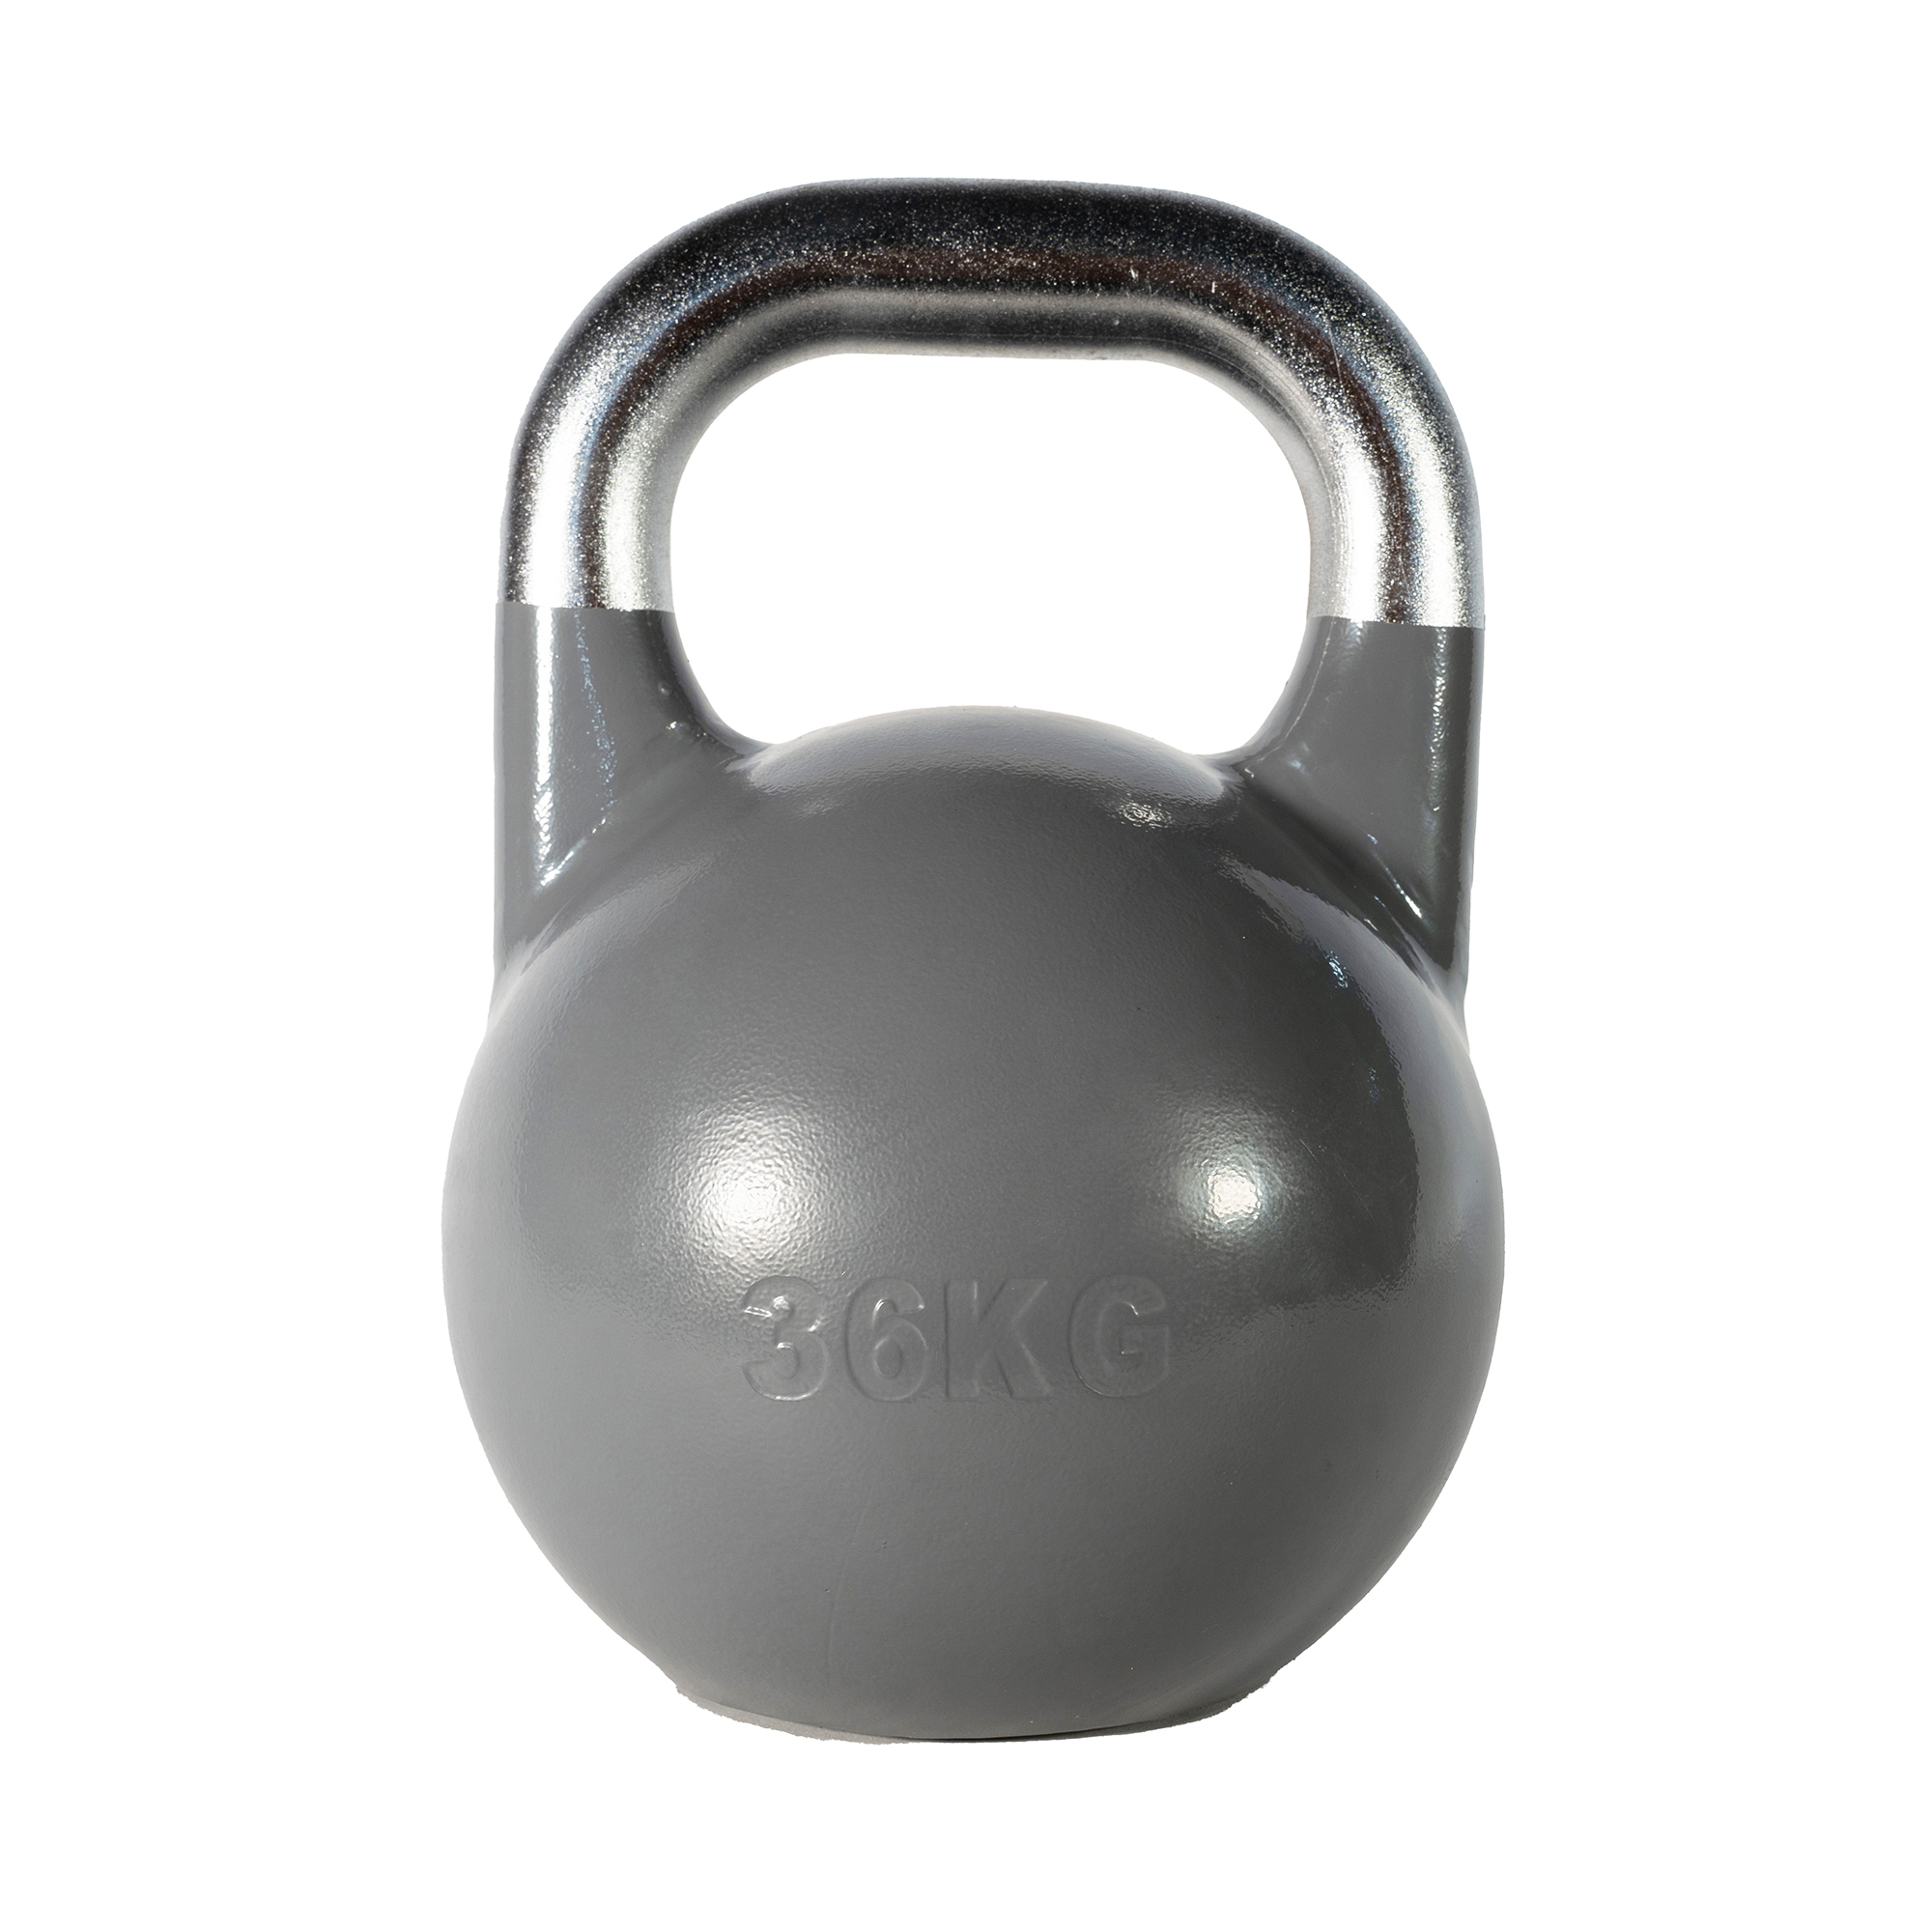 Brug SQ&SN Competition Kettlebell (36 kg) i støbejern. Udstyr til crossfit træning, styrketræning og funktionel træning til en forbedret oplevelse